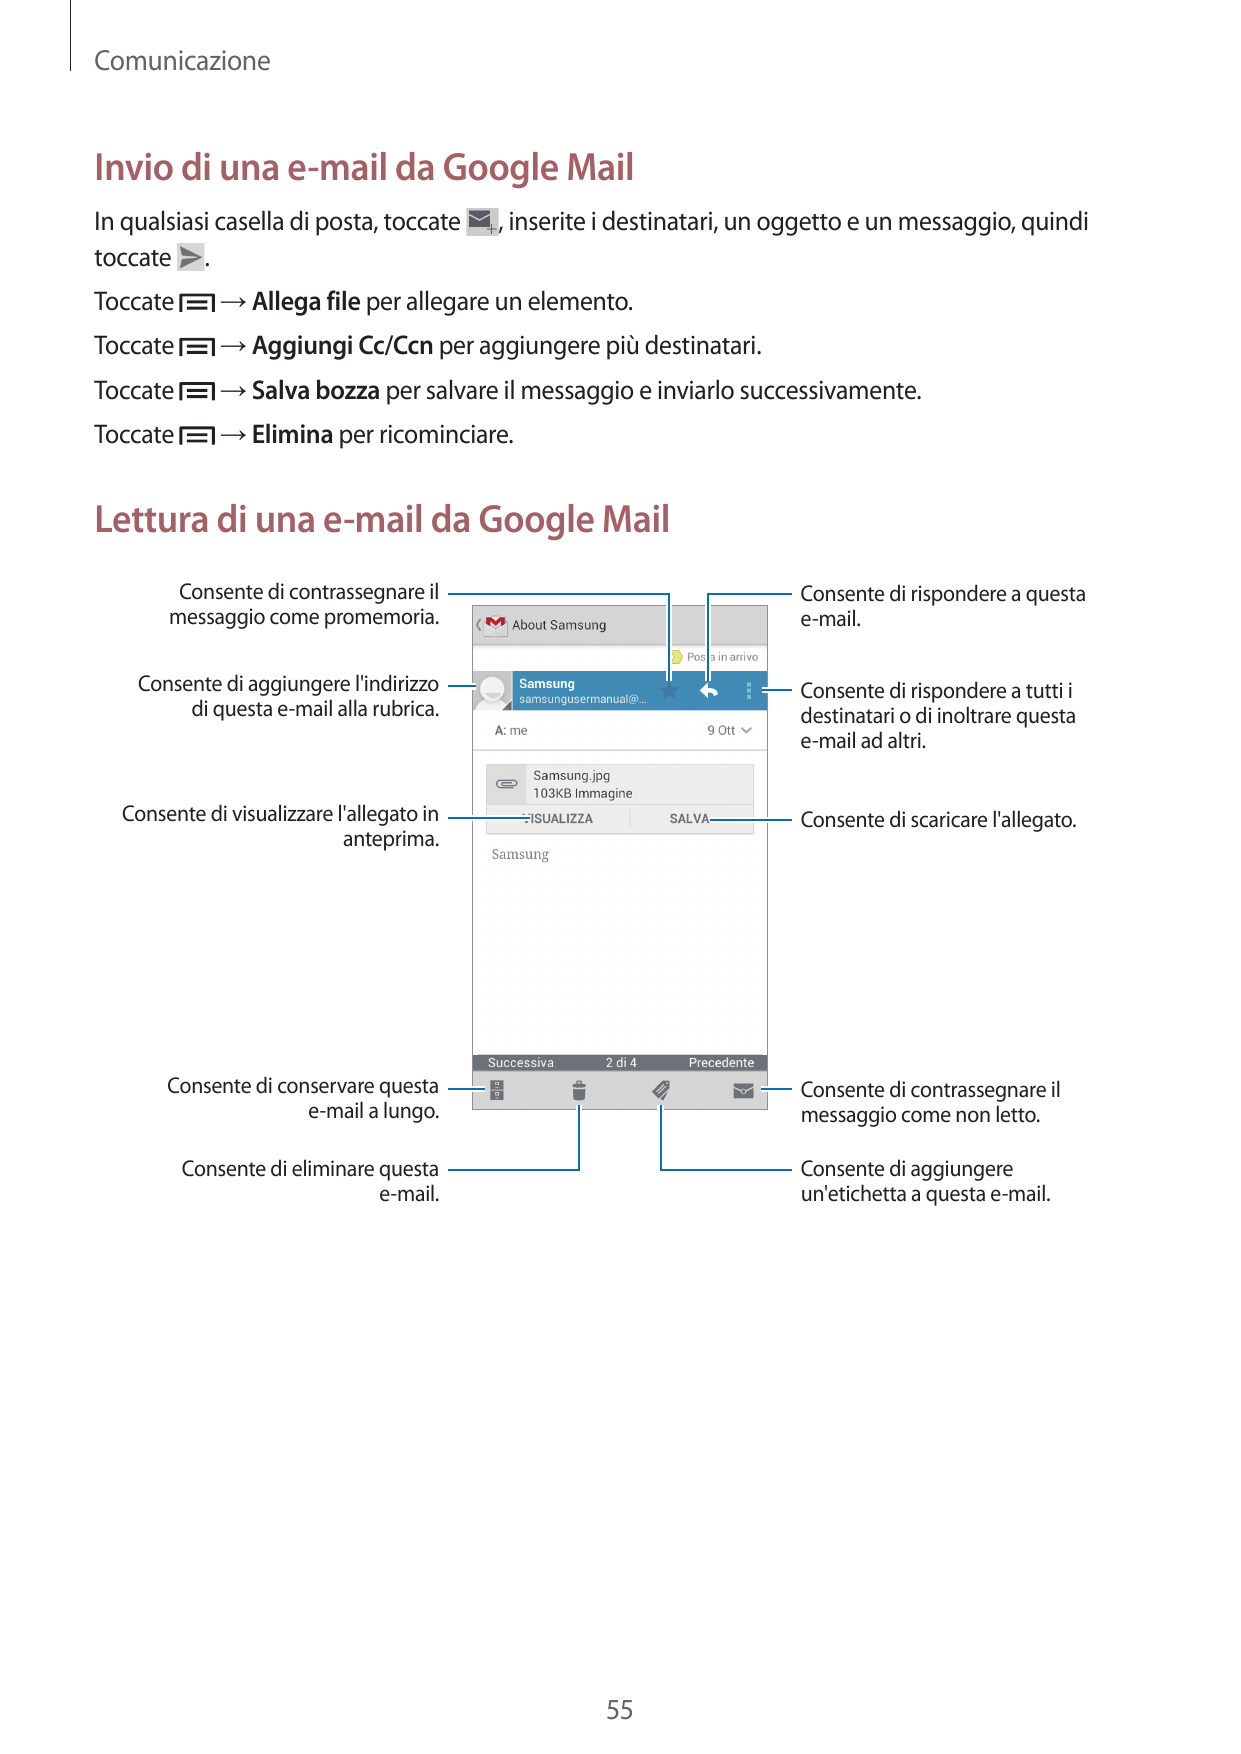 ComunicazioneInvio di una e-mail da Google MailIn qualsiasi casella di posta, toccatetoccate ., inserite i destinatari, un ogget